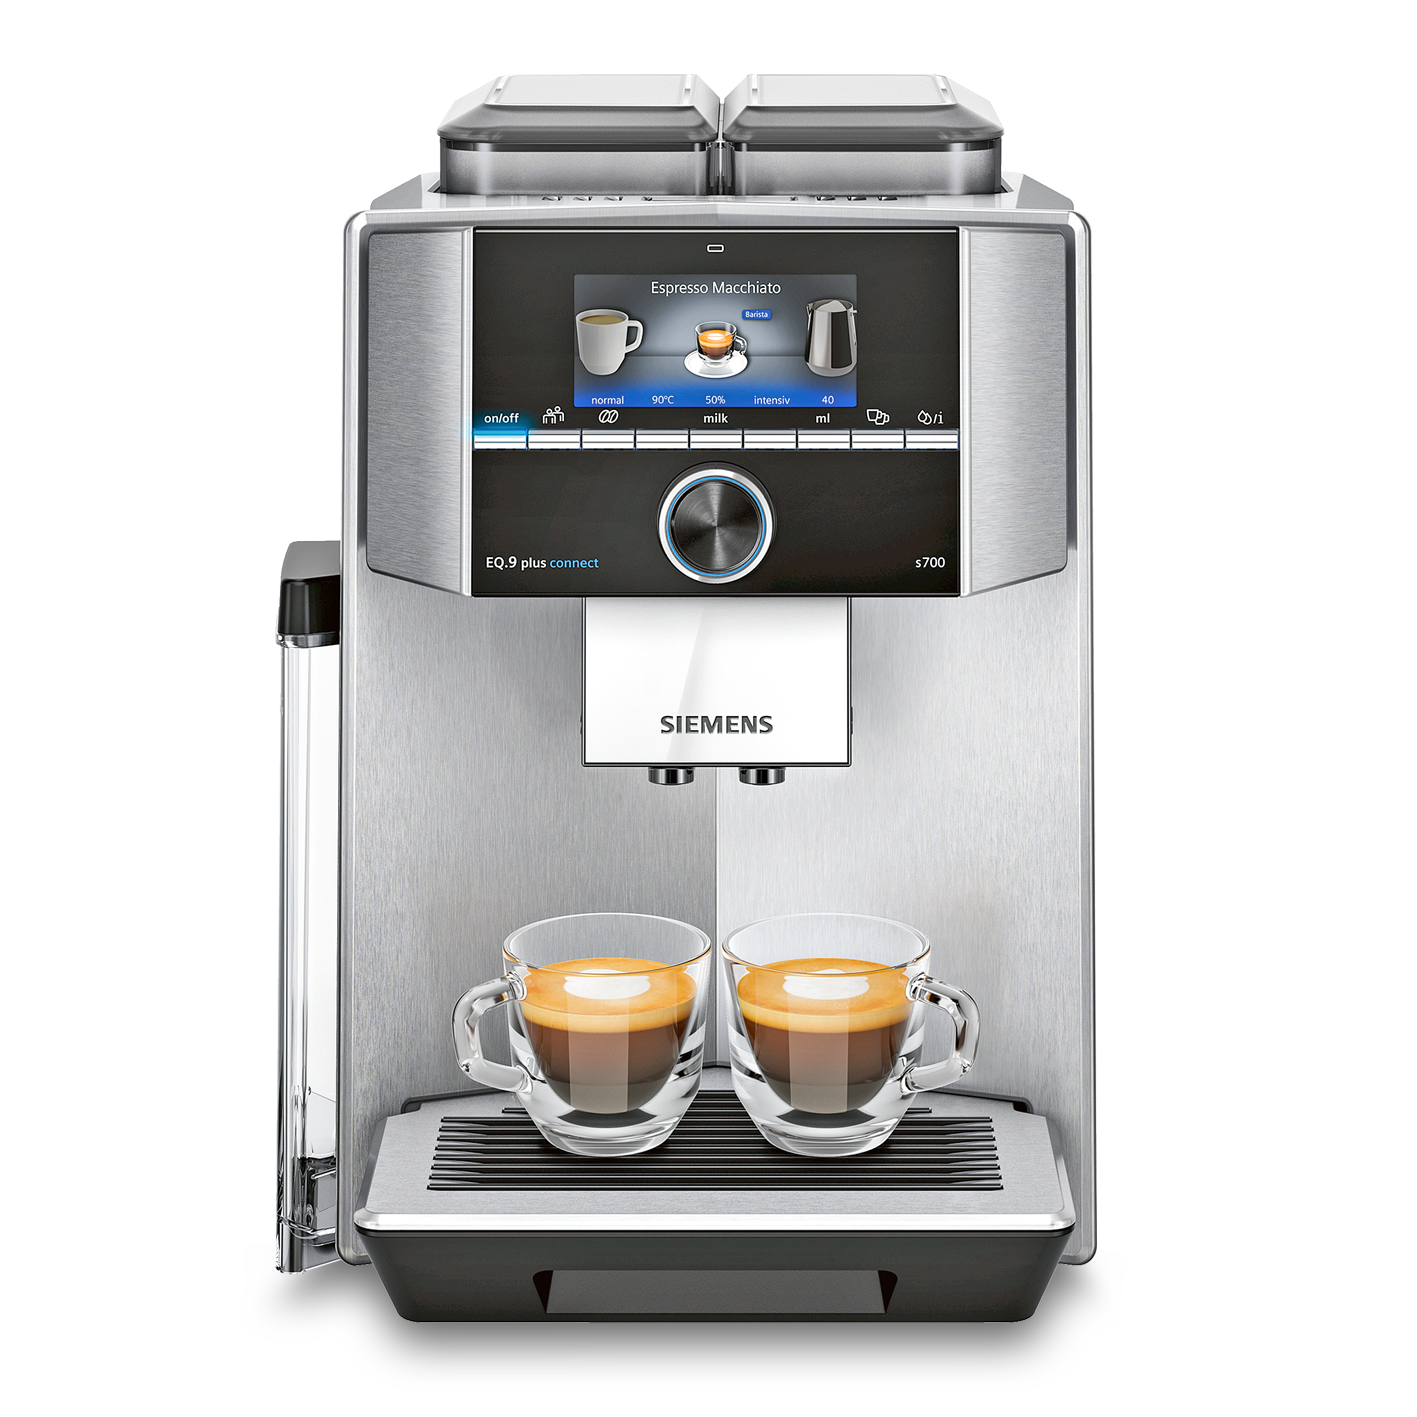 Vorschau: Siemens EQ.9 plus connect s700 Kaffeevollautomat bei MIOMONDO